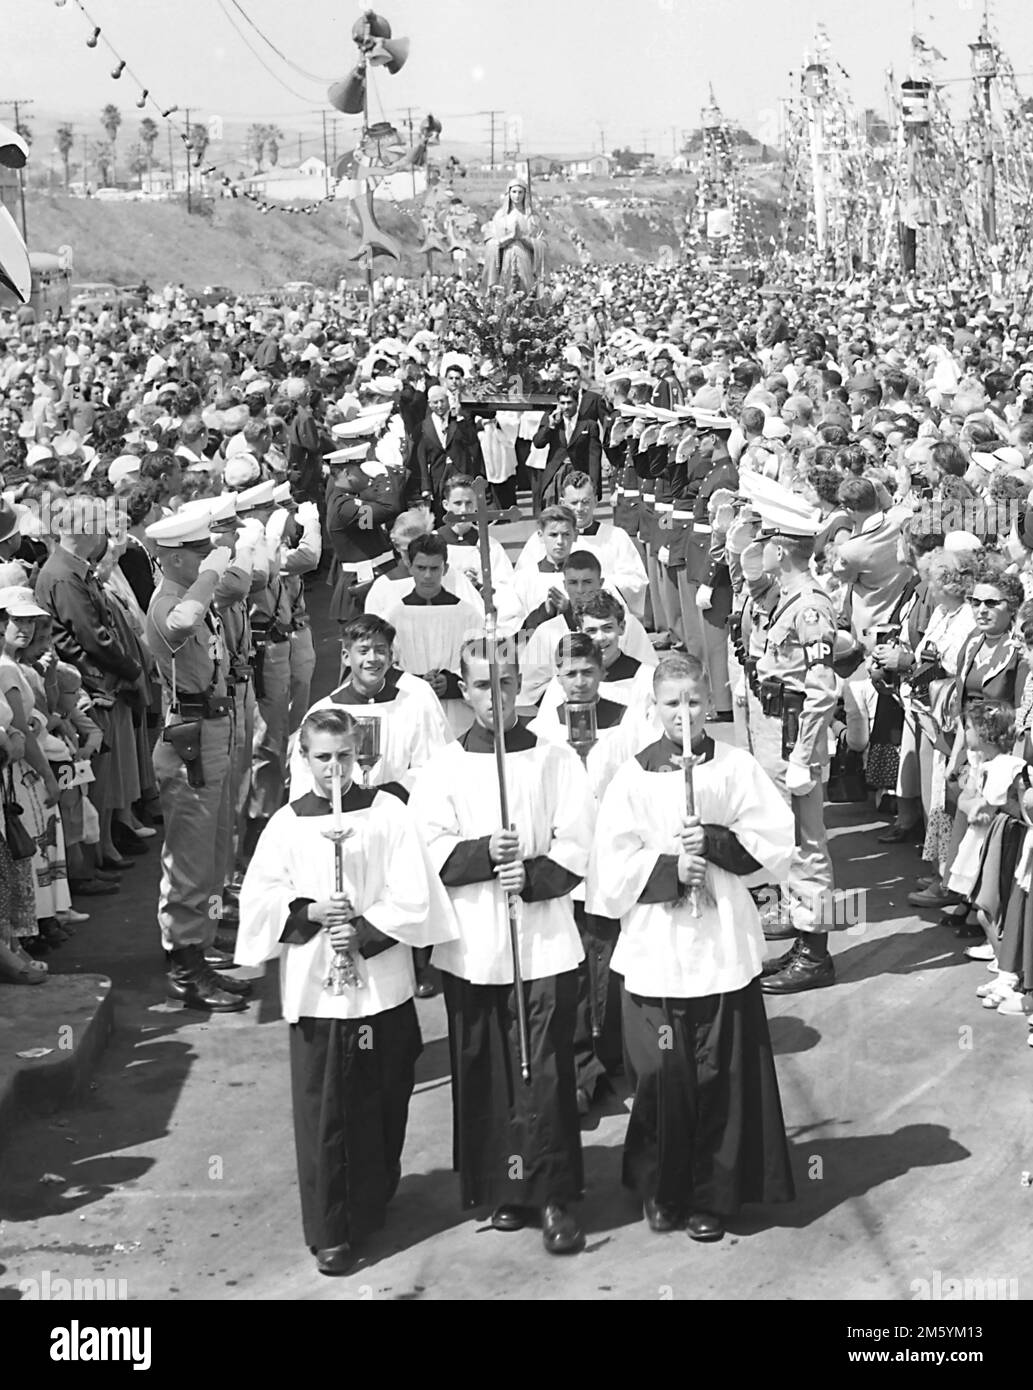 Processione cattolica con la Vergine Maria nella California meridionale, ca. 1960 Foto Stock